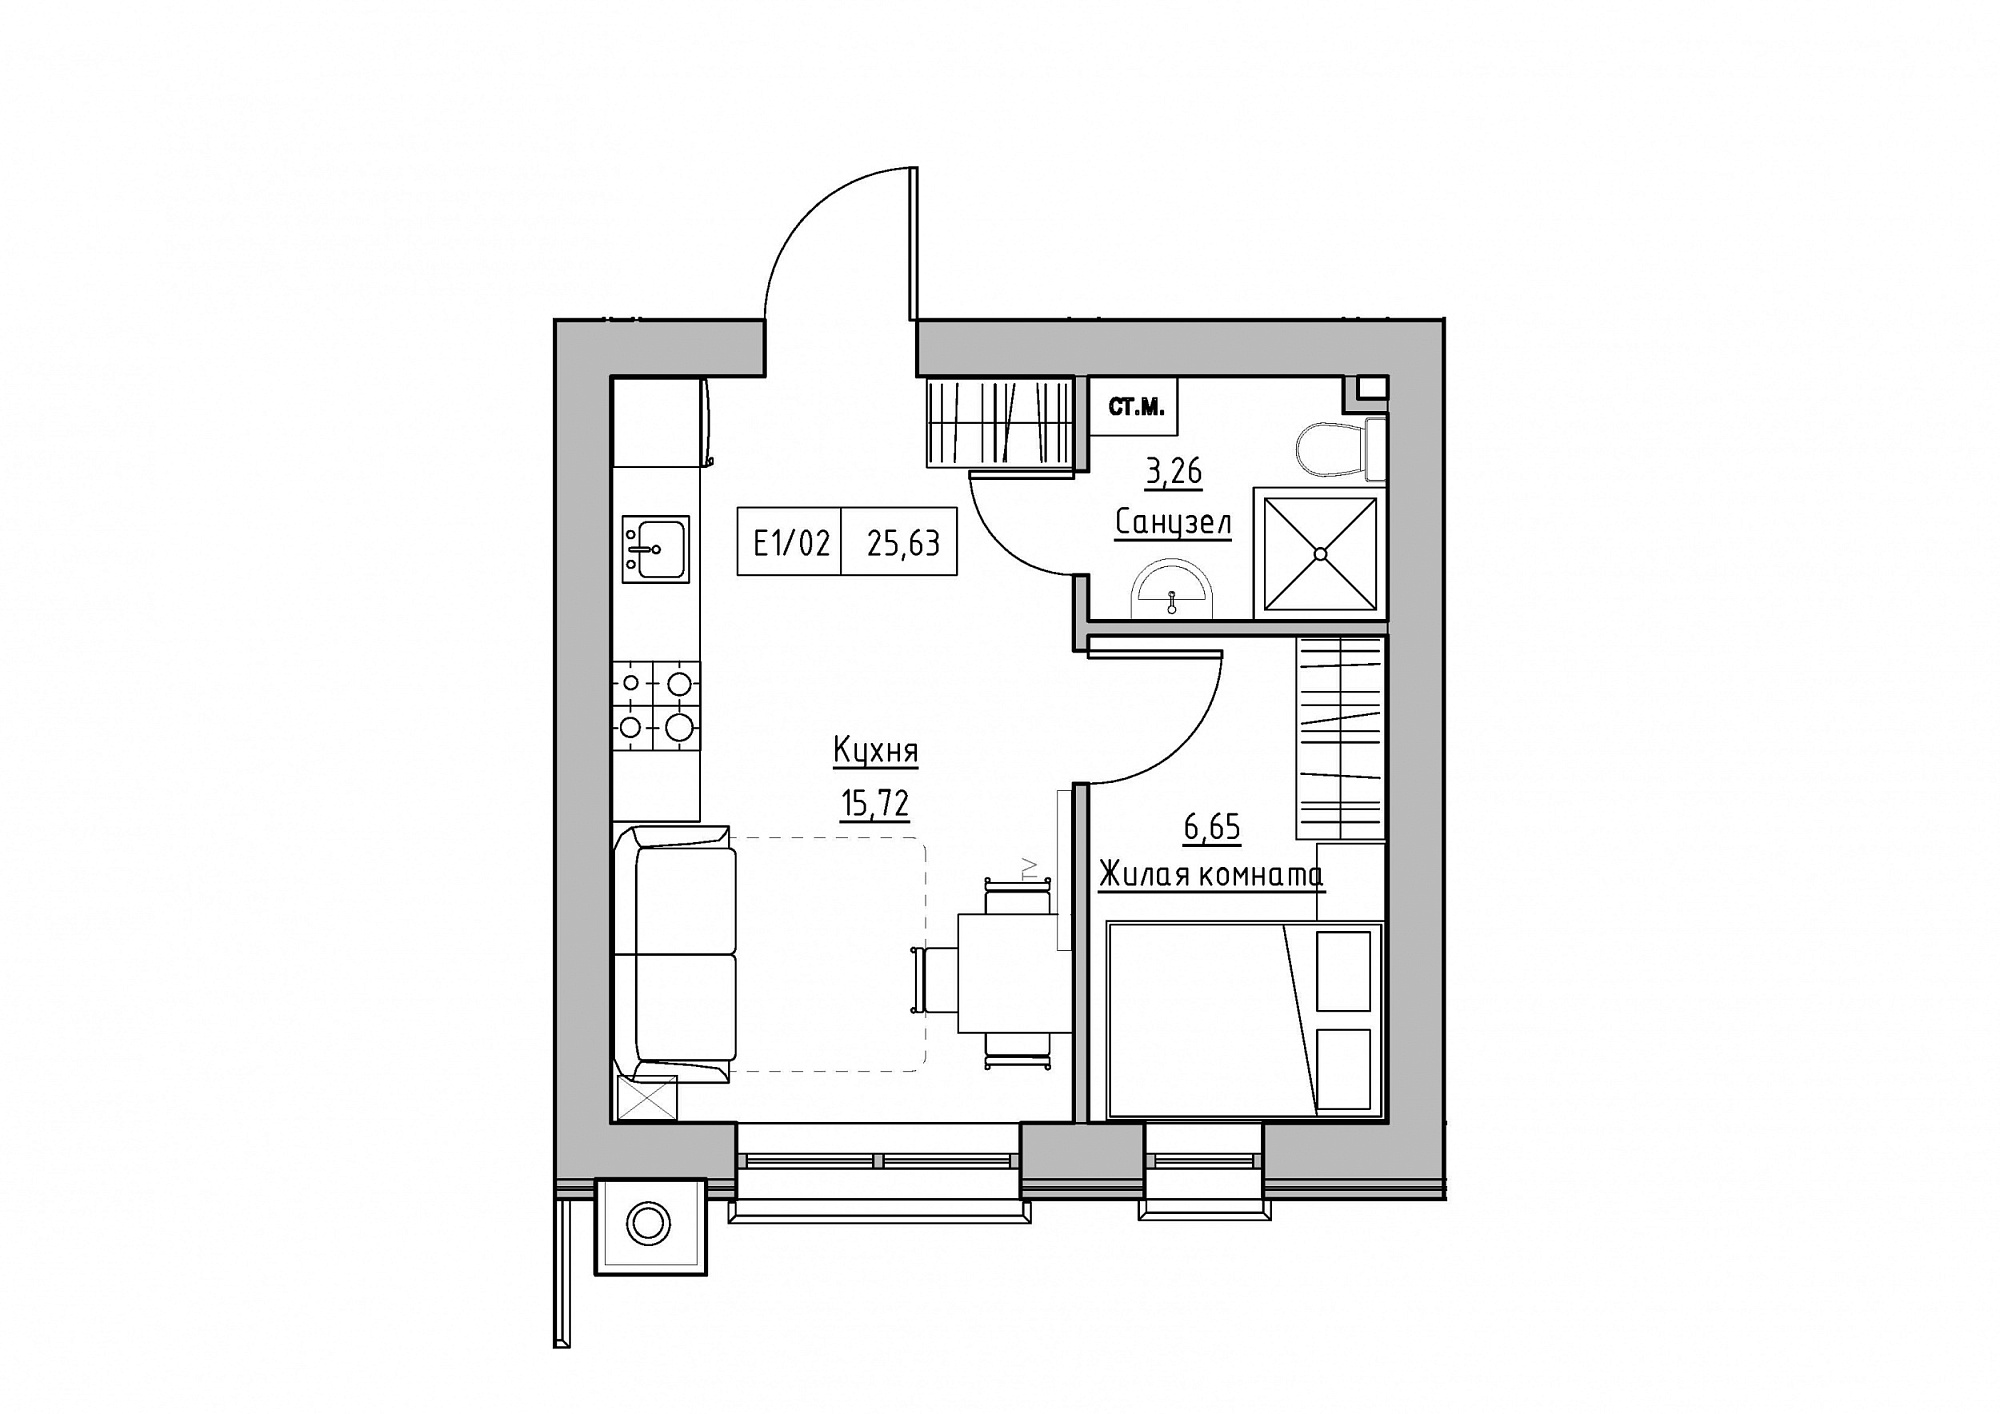 Планування 1-к квартира площею 25.63м2, KS-012-04/0004.